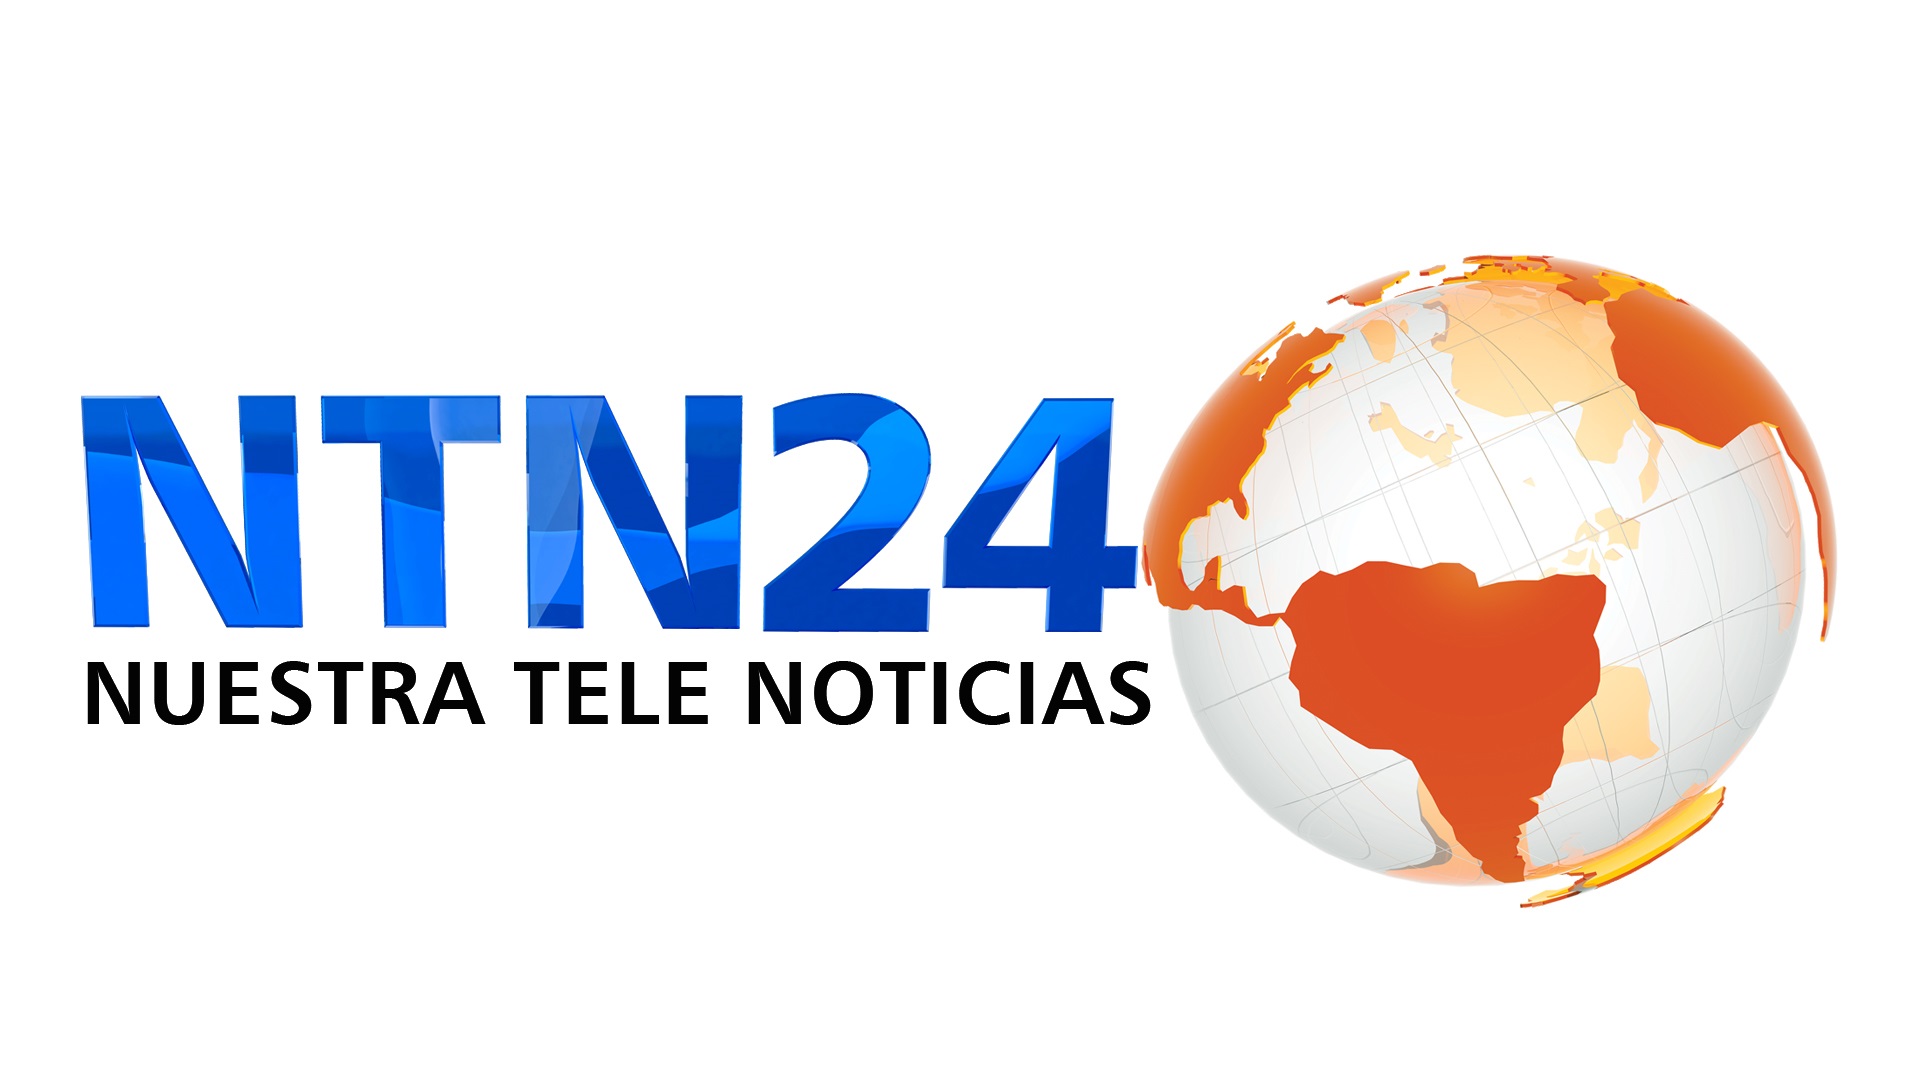 NTN24